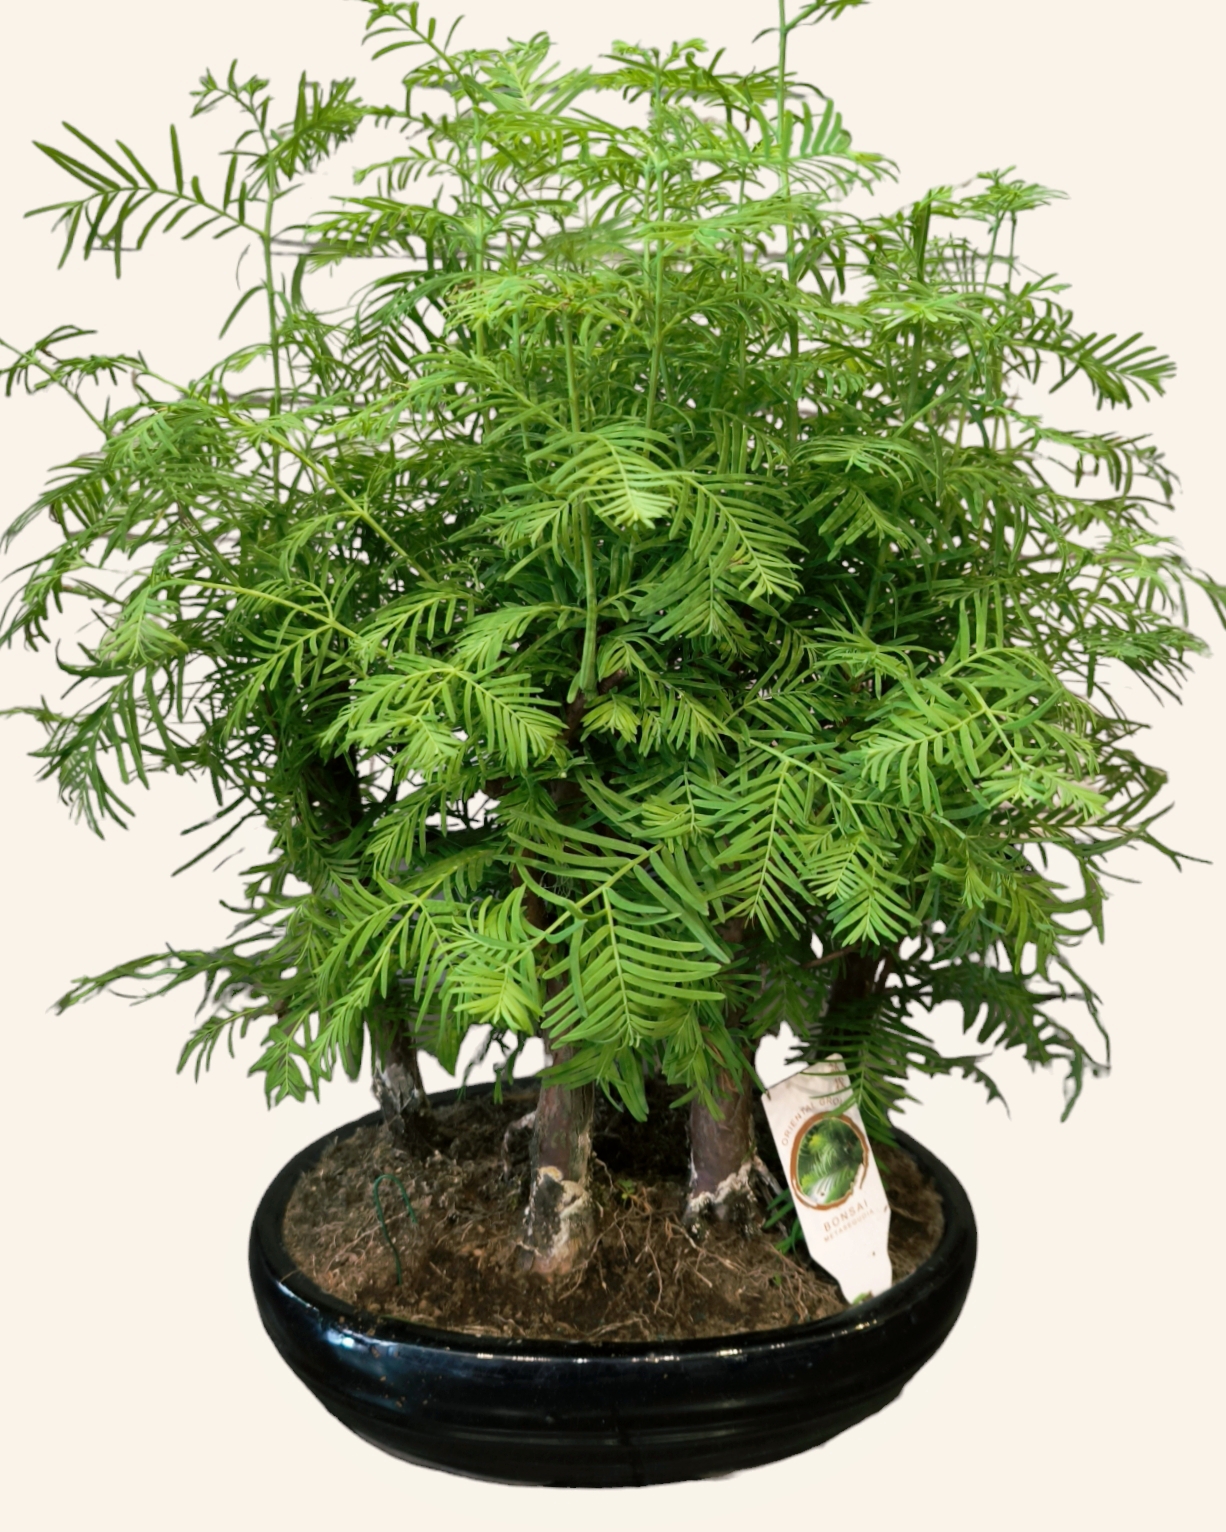 Itthon is nagyon kedveltek a bonsaiok, nézzük hogyan kell gondozni a Bonsai Metasequoiat